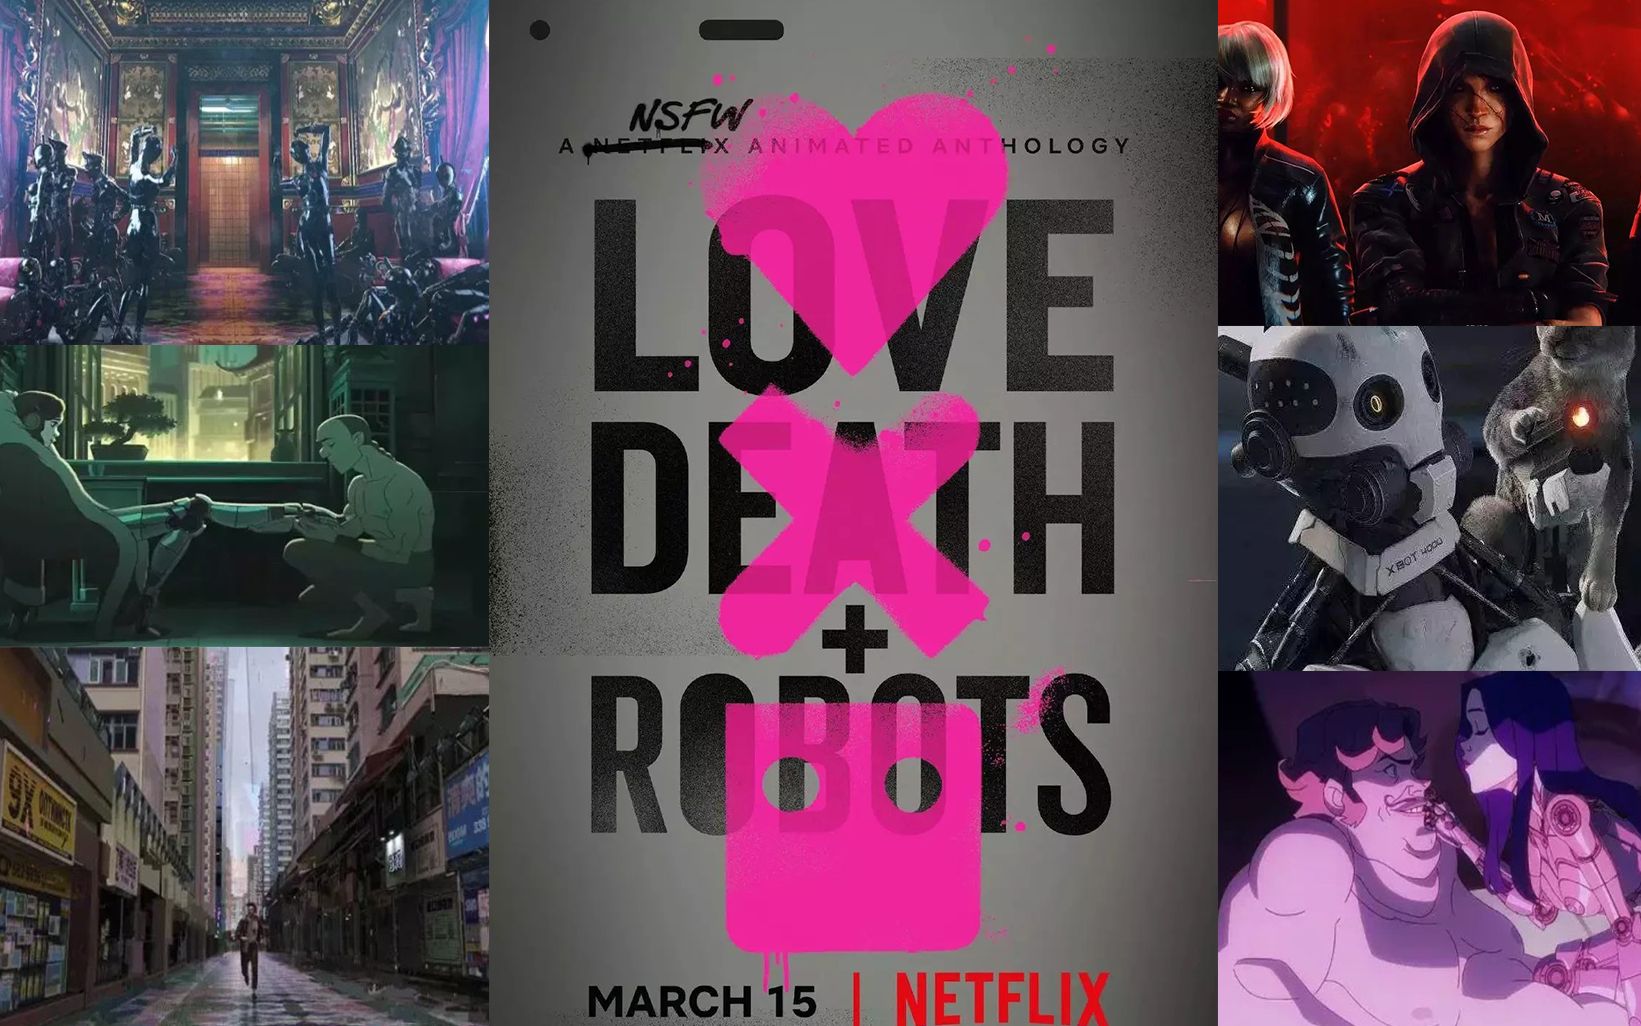 爱,死亡和机器人高清图片